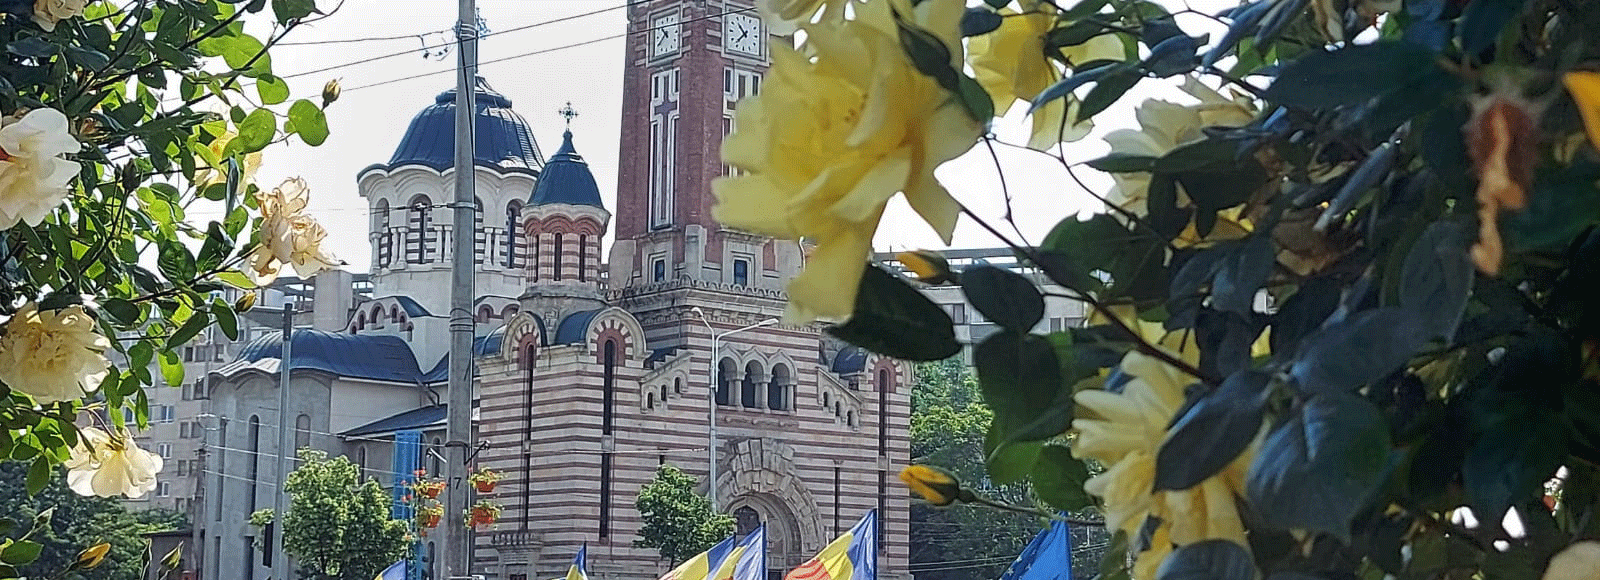 Matrimoniale Ploiești, Prahova - Întâlnește persoane compatibile